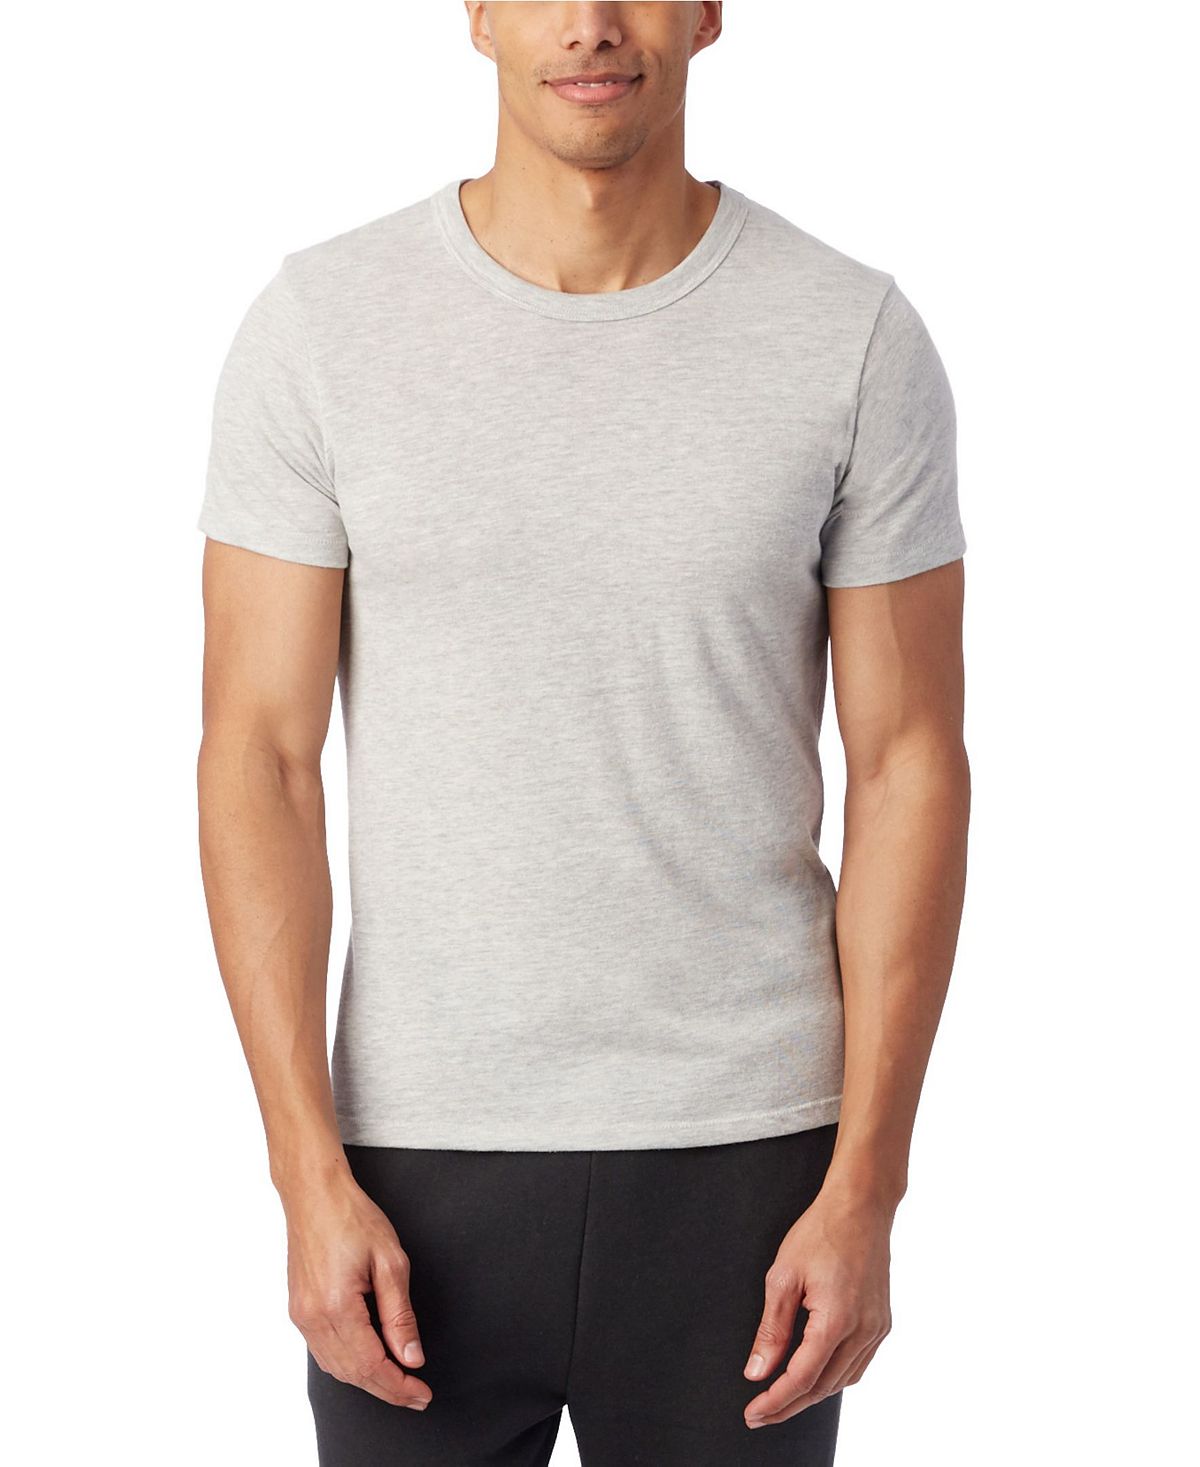 Мужская футболка из эко-джерси с круглым вырезом Alternative Apparel